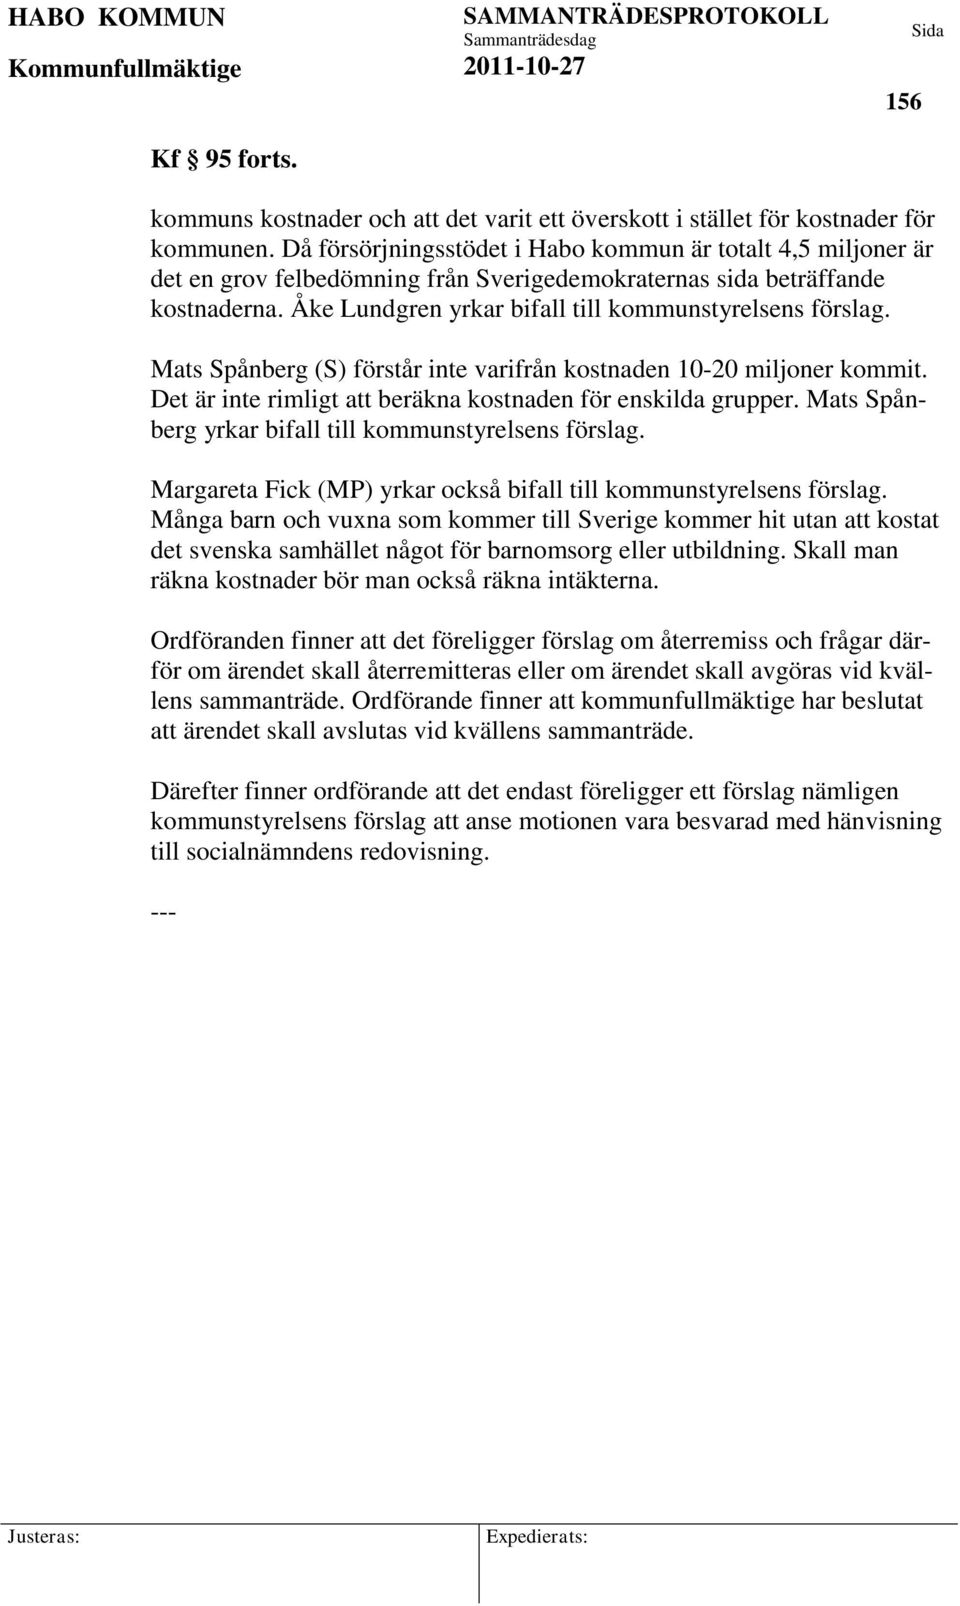 Mats Spånberg (S) förstår inte varifrån kostnaden 10-20 miljoner kommit. Det är inte rimligt att beräkna kostnaden för enskilda grupper. Mats Spånberg yrkar bifall till kommunstyrelsens förslag.